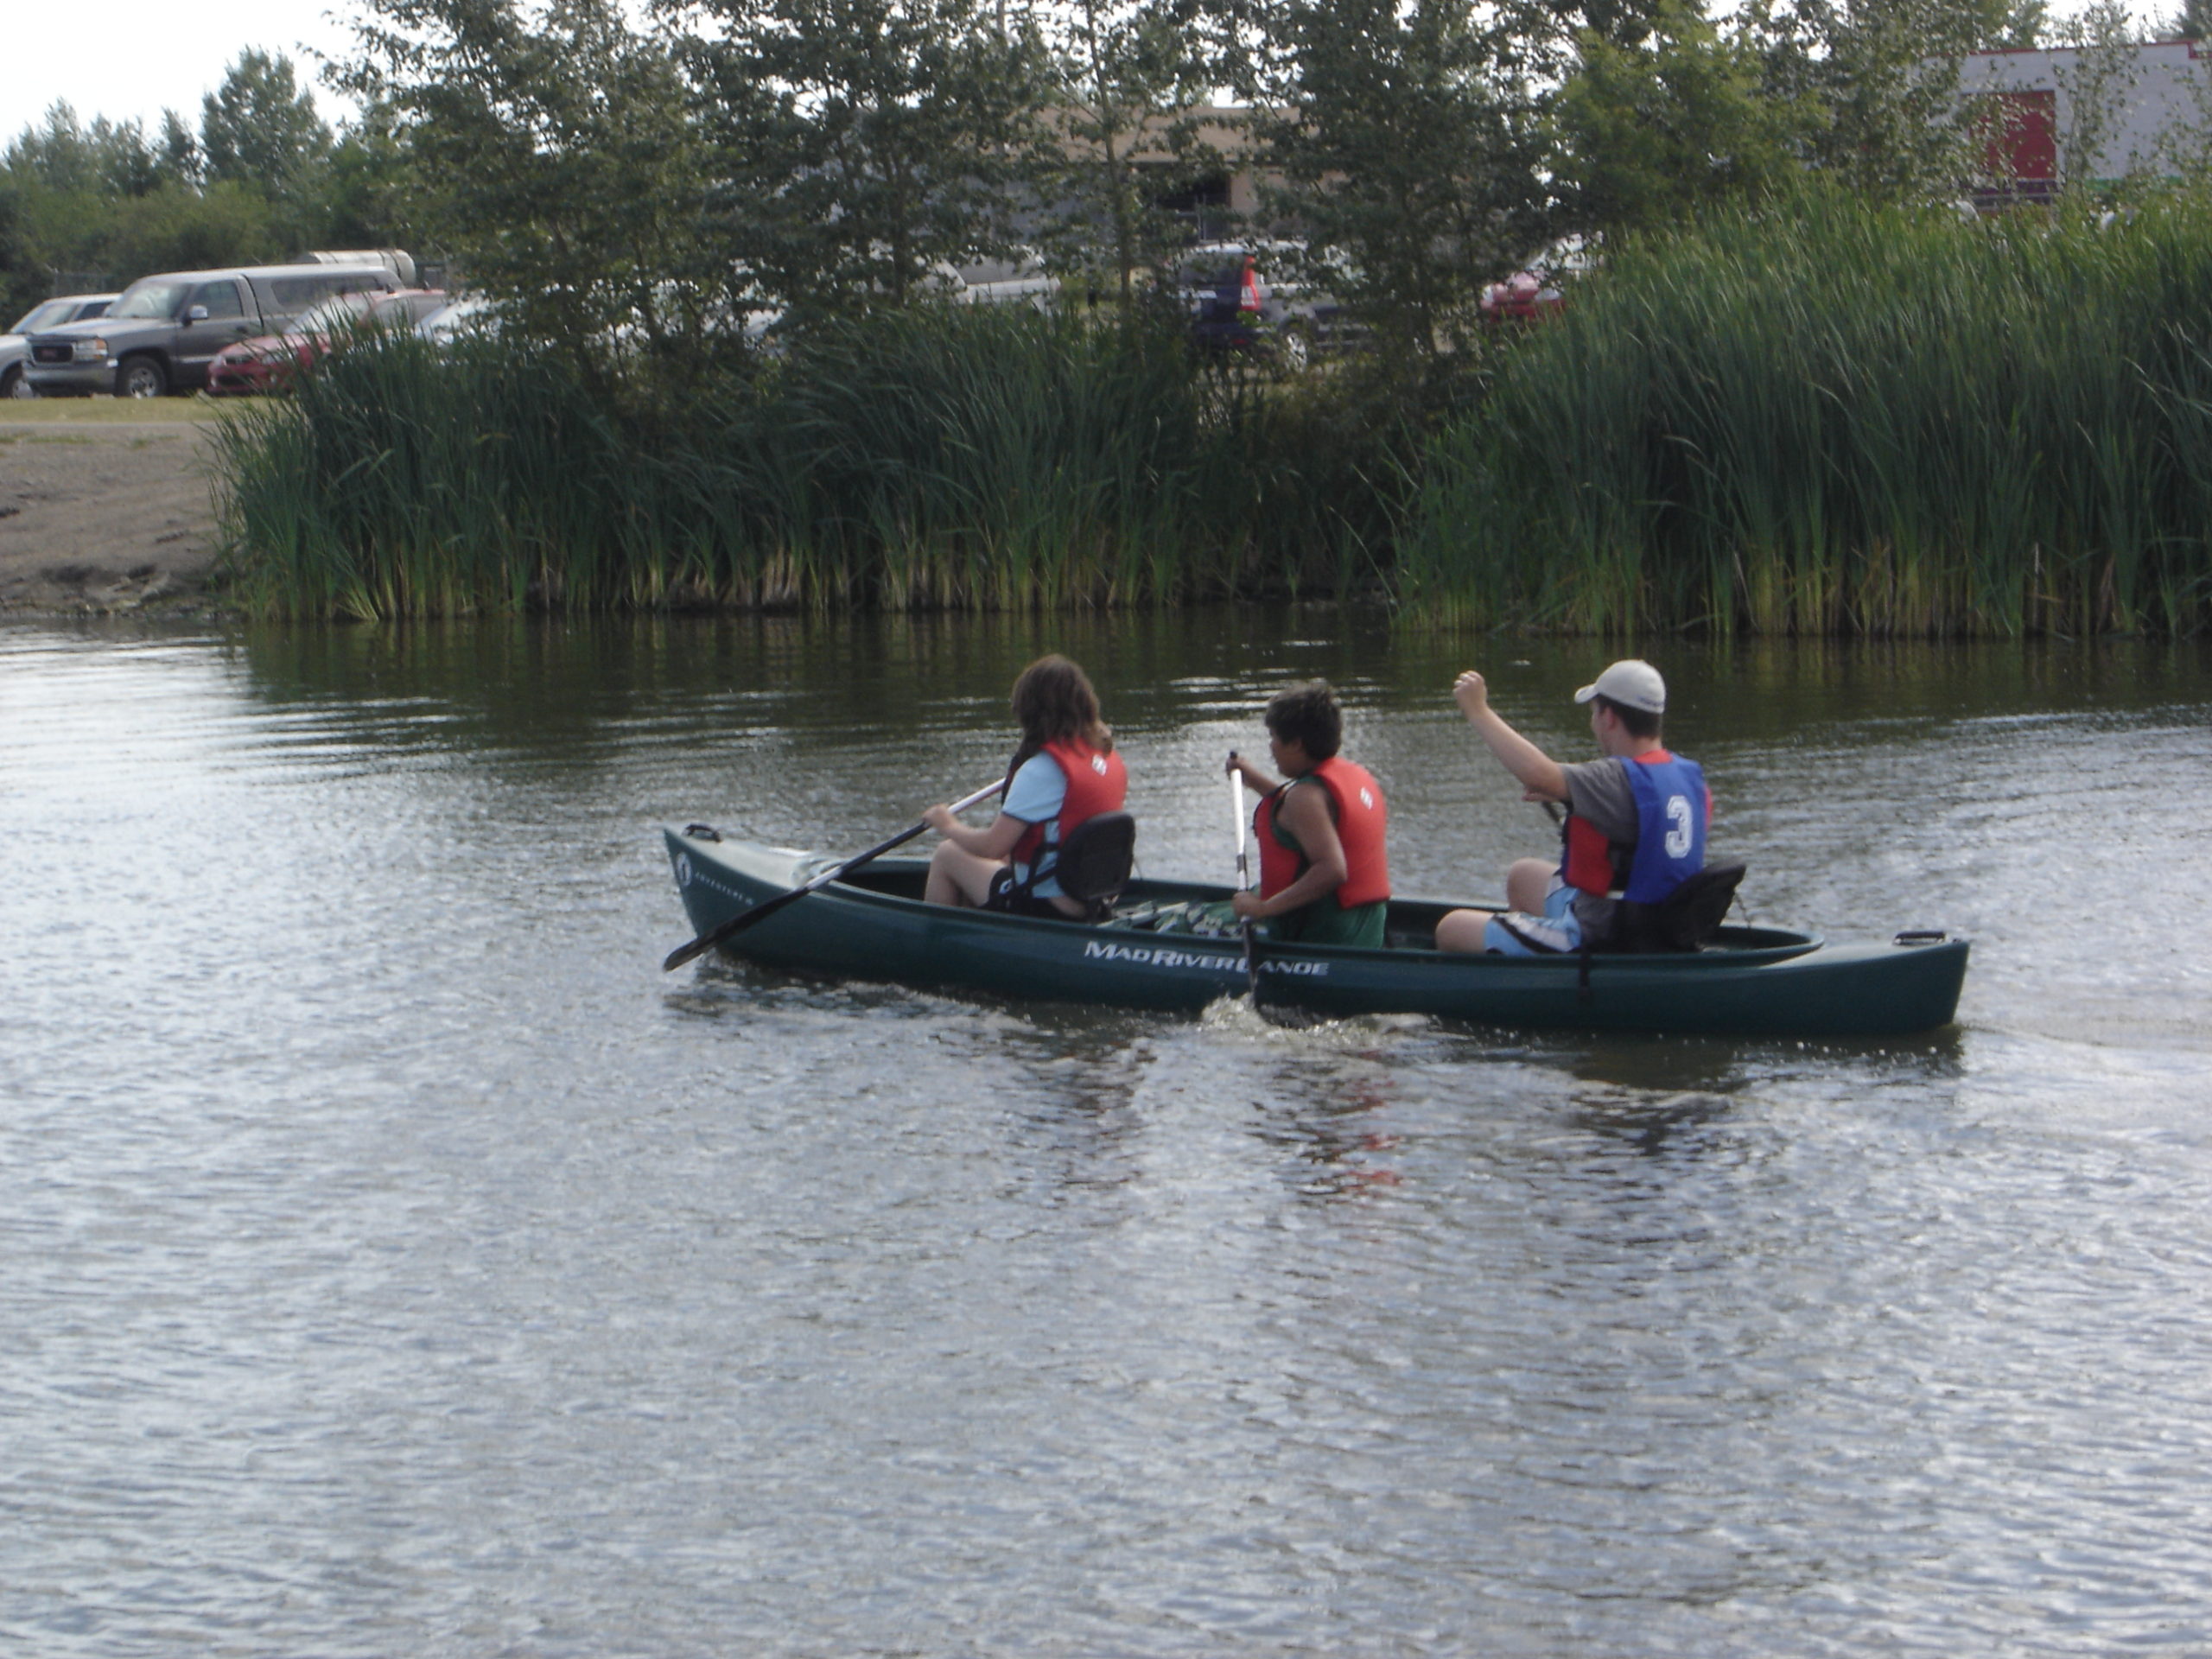 Traditional Canoe / Kayak